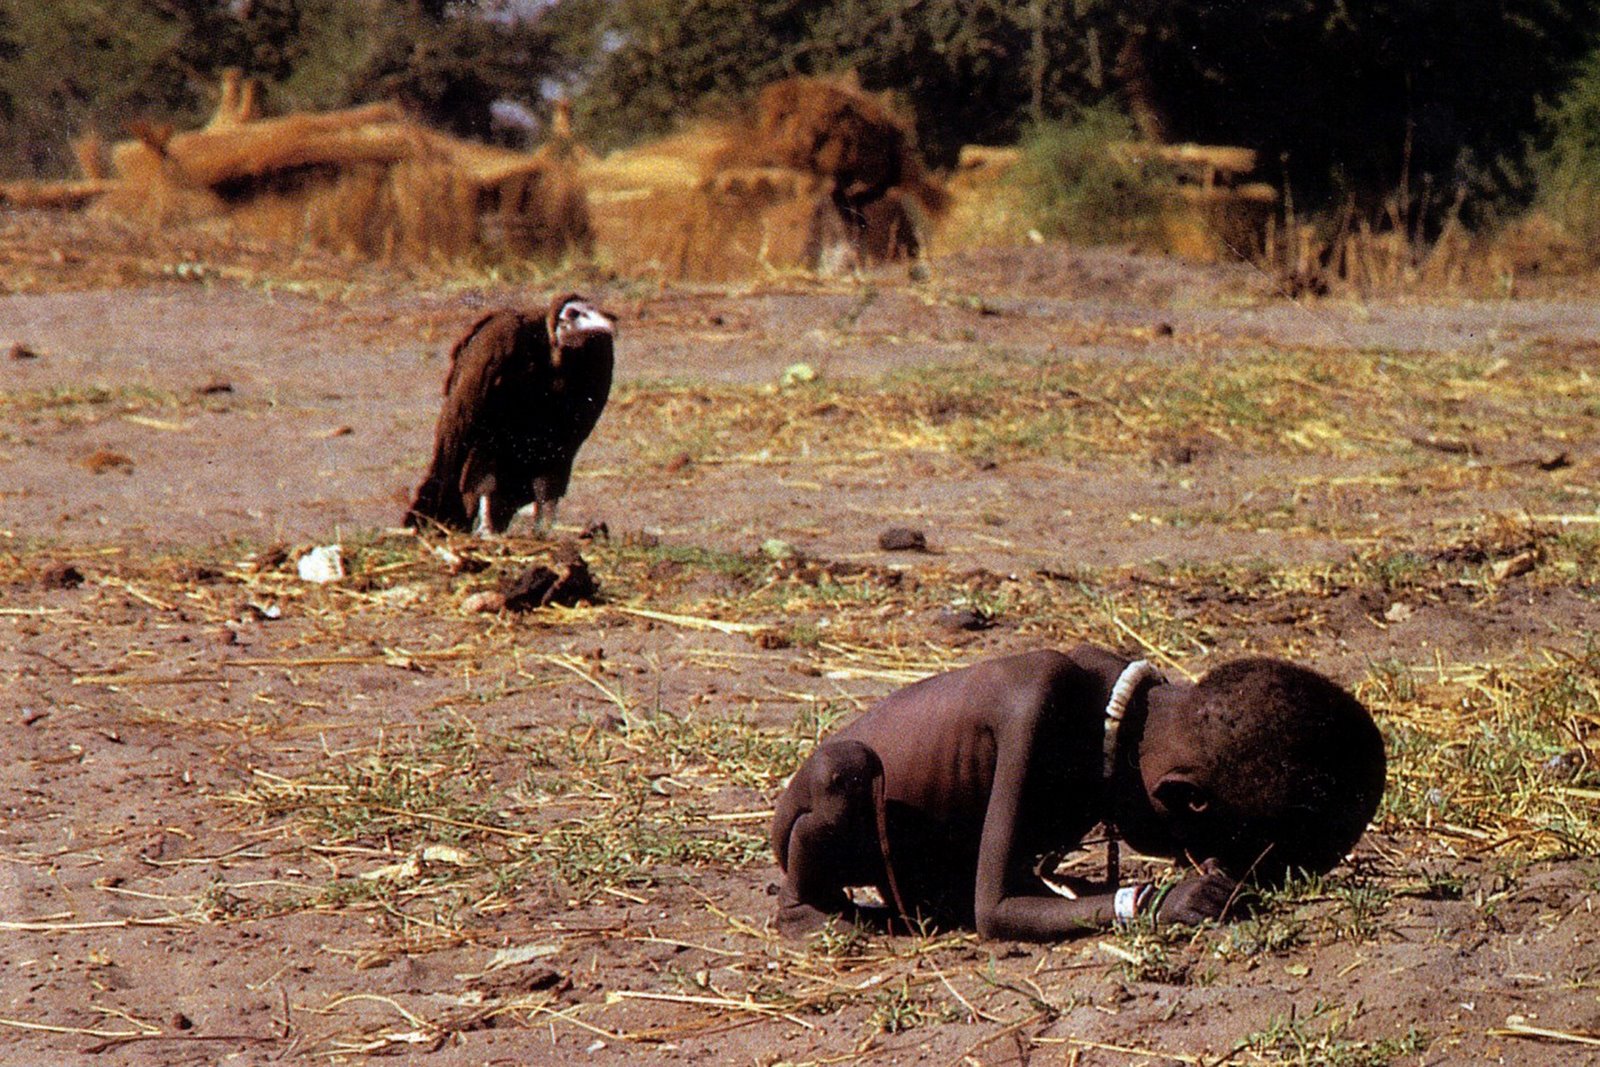 Plano general, color. Niño africano esqueletico encogido sobre si mismo. Un buitre le observa al fondo.